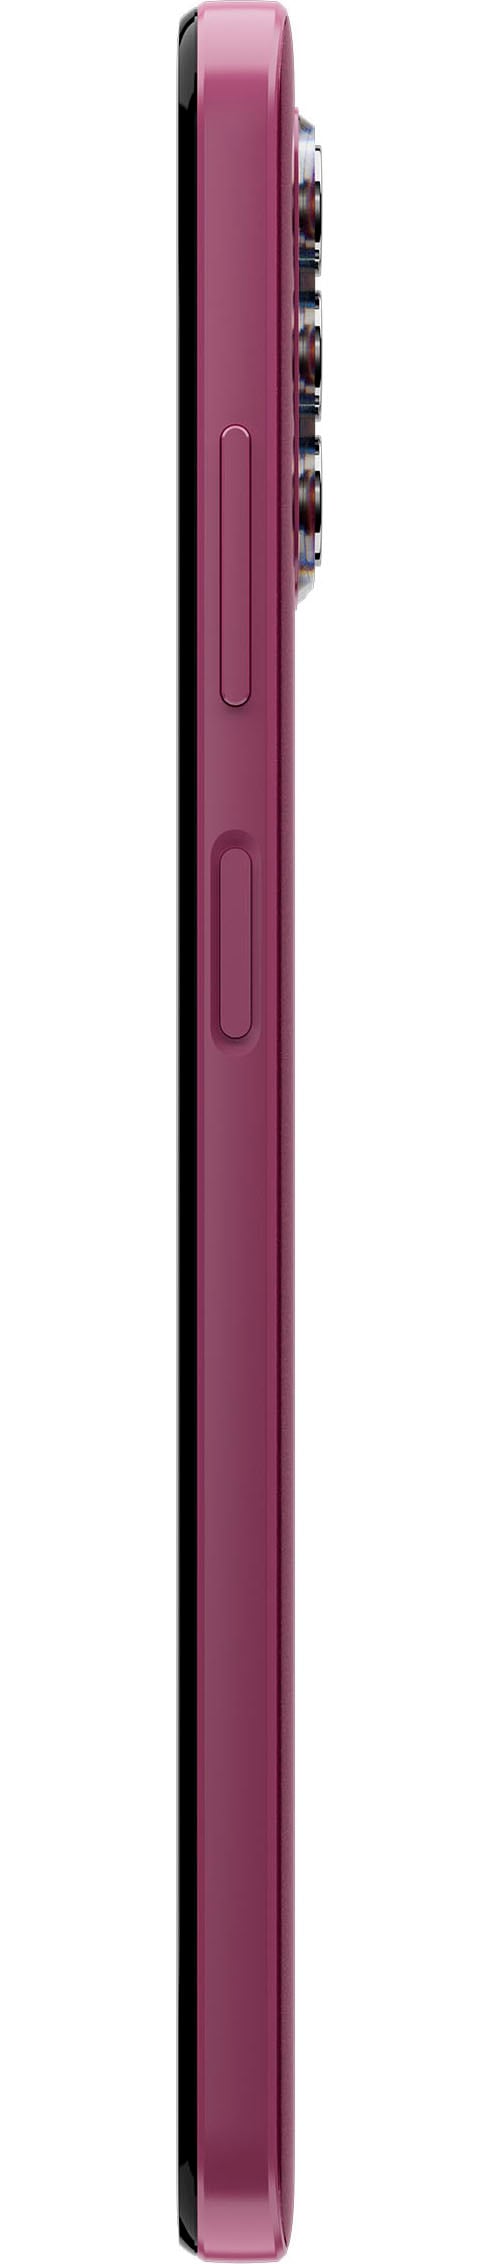 Nokia Smartphone »G42«, purple, 16,9 cm/6,65 Zoll, 128 GB Speicherplatz, 50  MP Kamera ➥ 3 Jahre XXL Garantie | UNIVERSAL